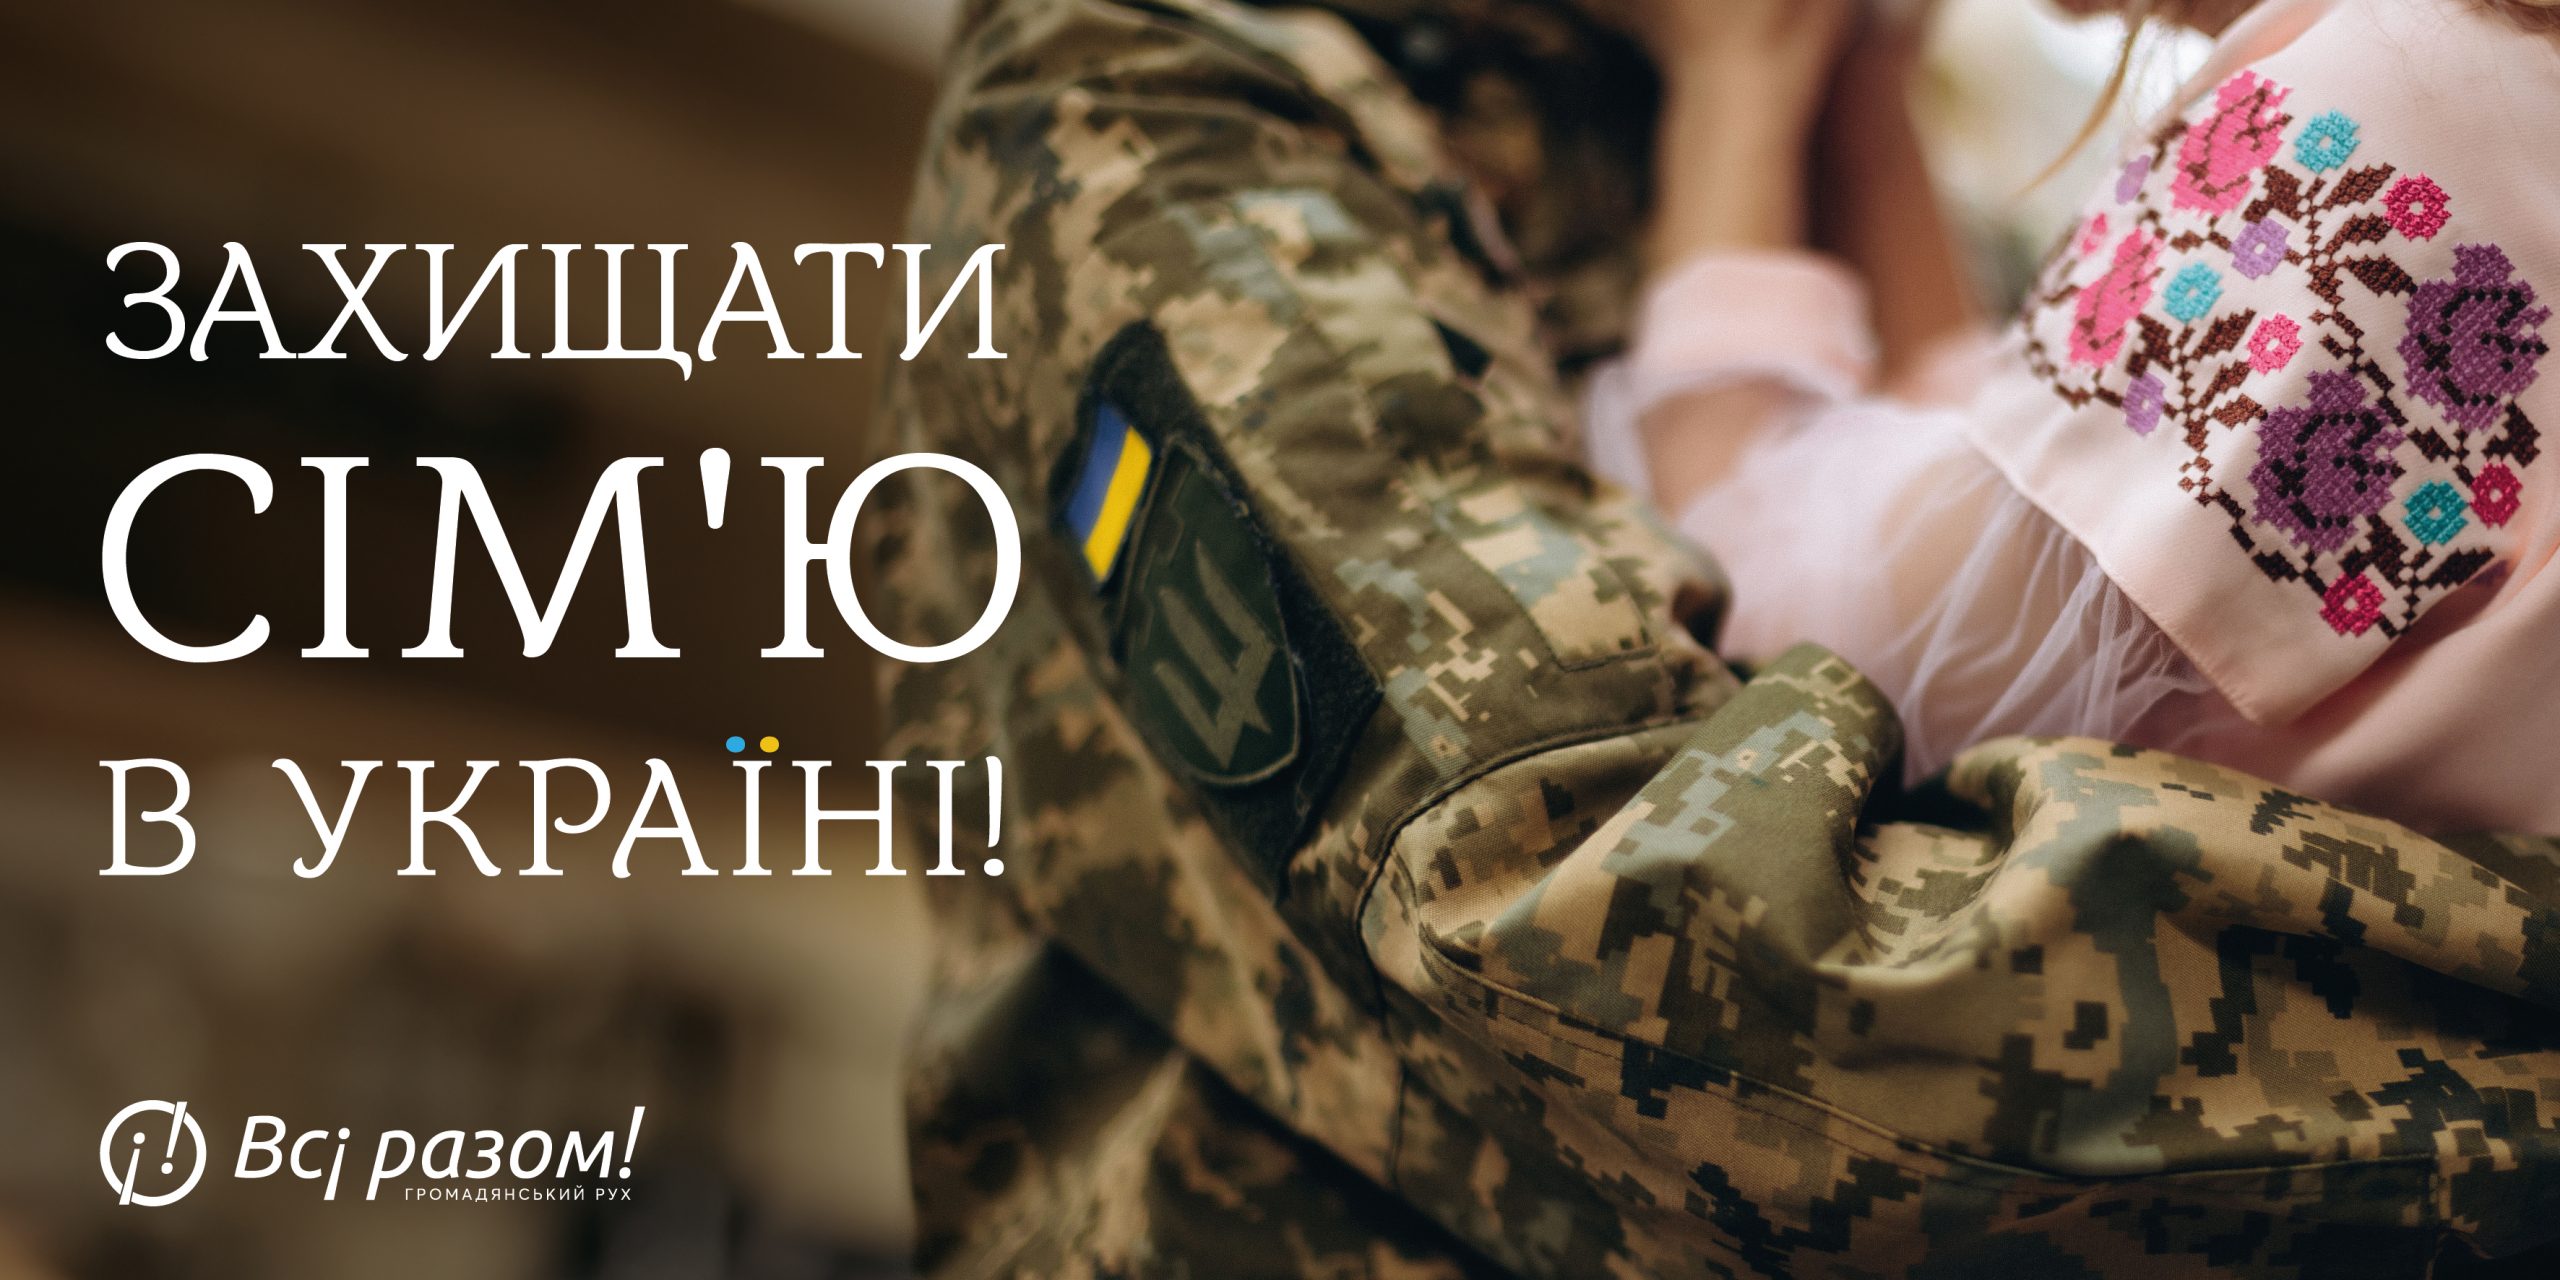 Сім’я і Україна – базові і фундаментальні цінності кожного патріота. Саме вони найбільше мотивують Сили оборони на фронті. Сьогодні ми всі єднаємося, щоб захистити і зберегти головне